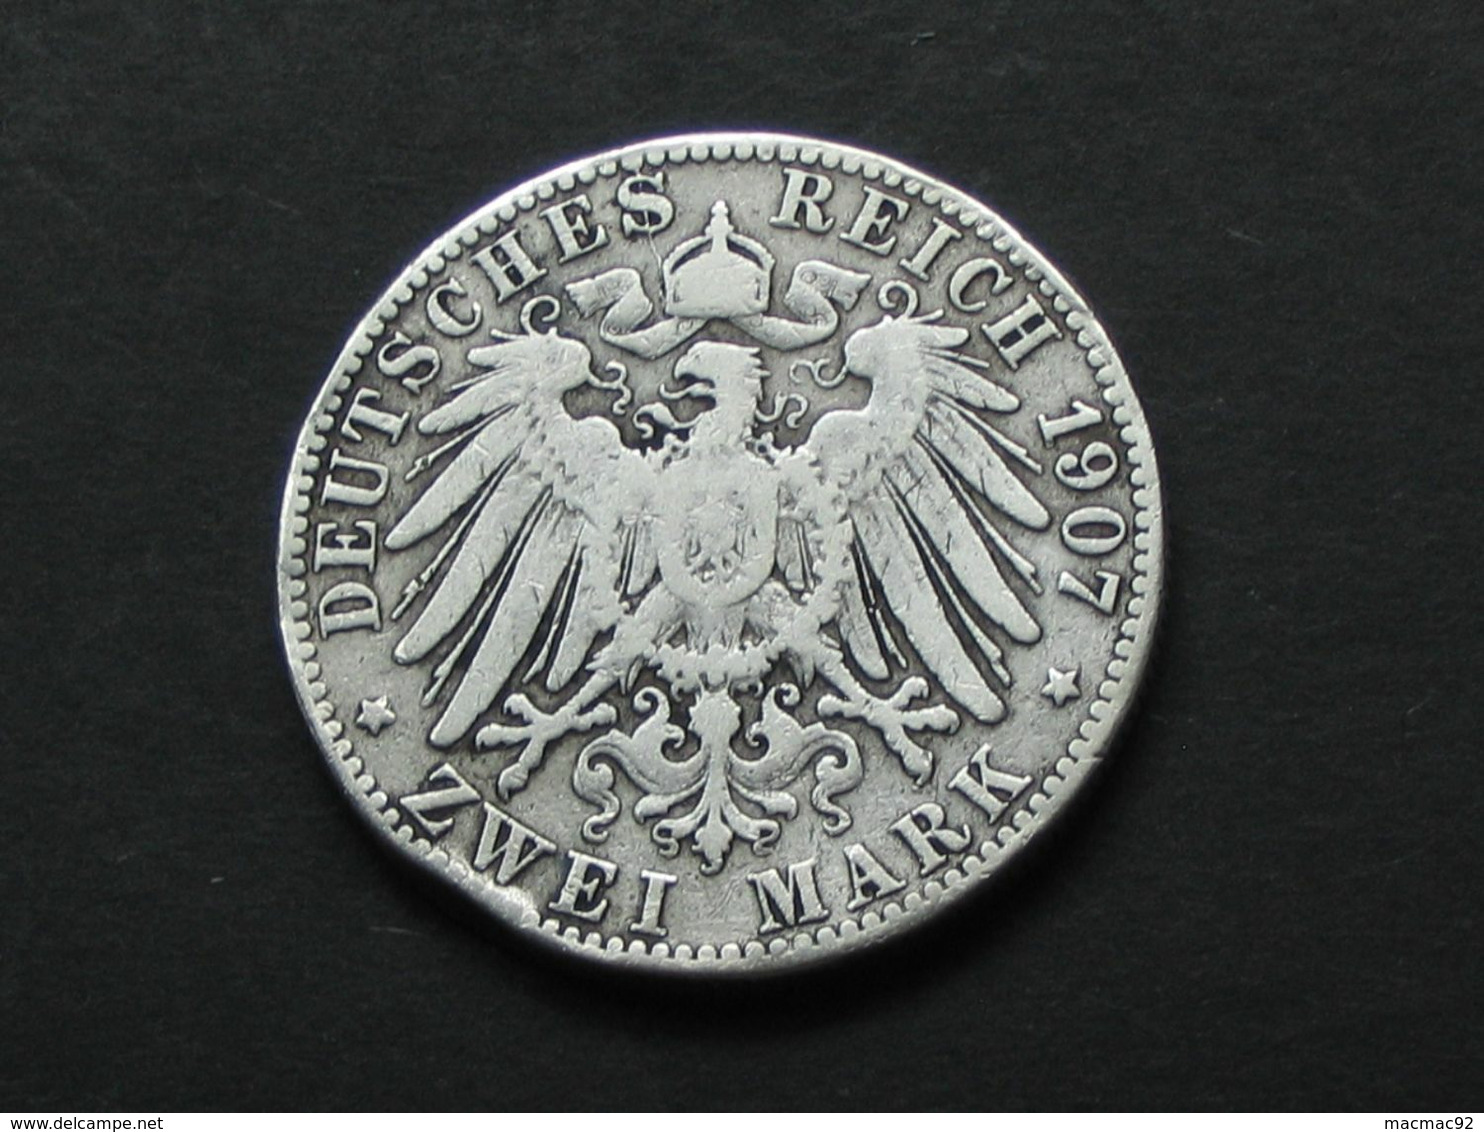 2 Zwei Mark 1907 J - Allemagne - Germany - Hamburg  ***** EN ACHAT IMMEDIAT ***** - 2, 3 & 5 Mark Argent